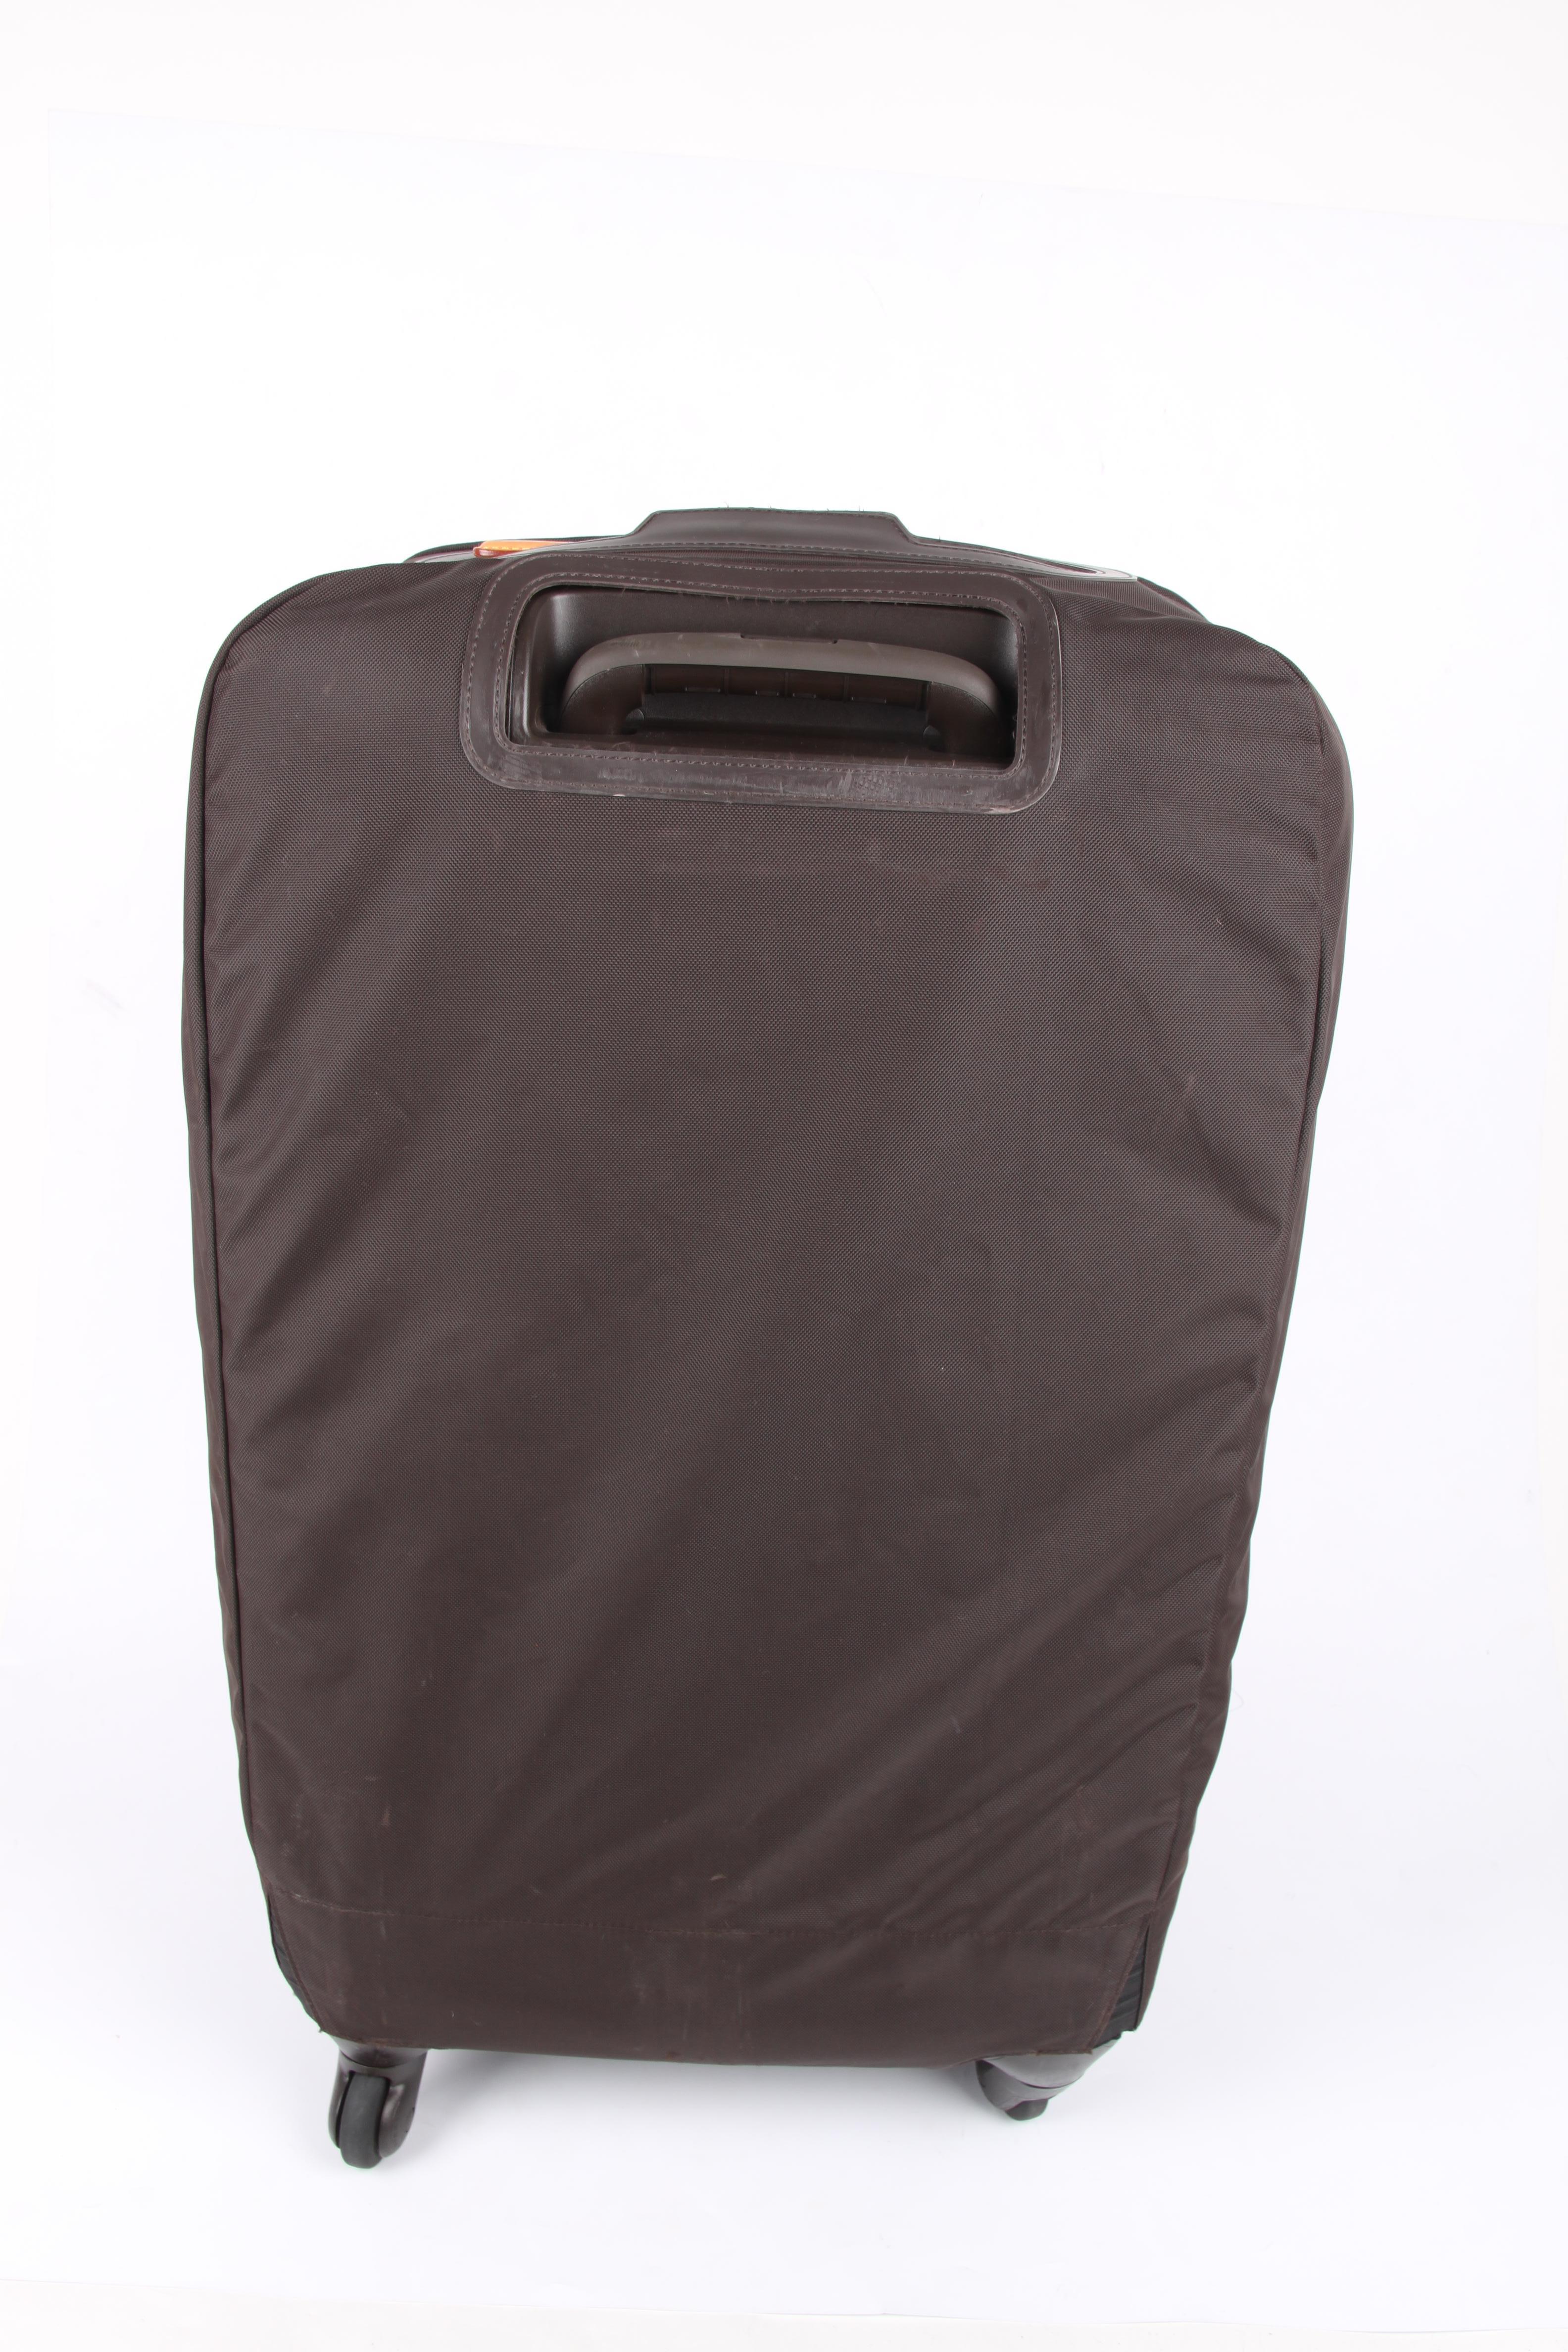 brown luggage bag